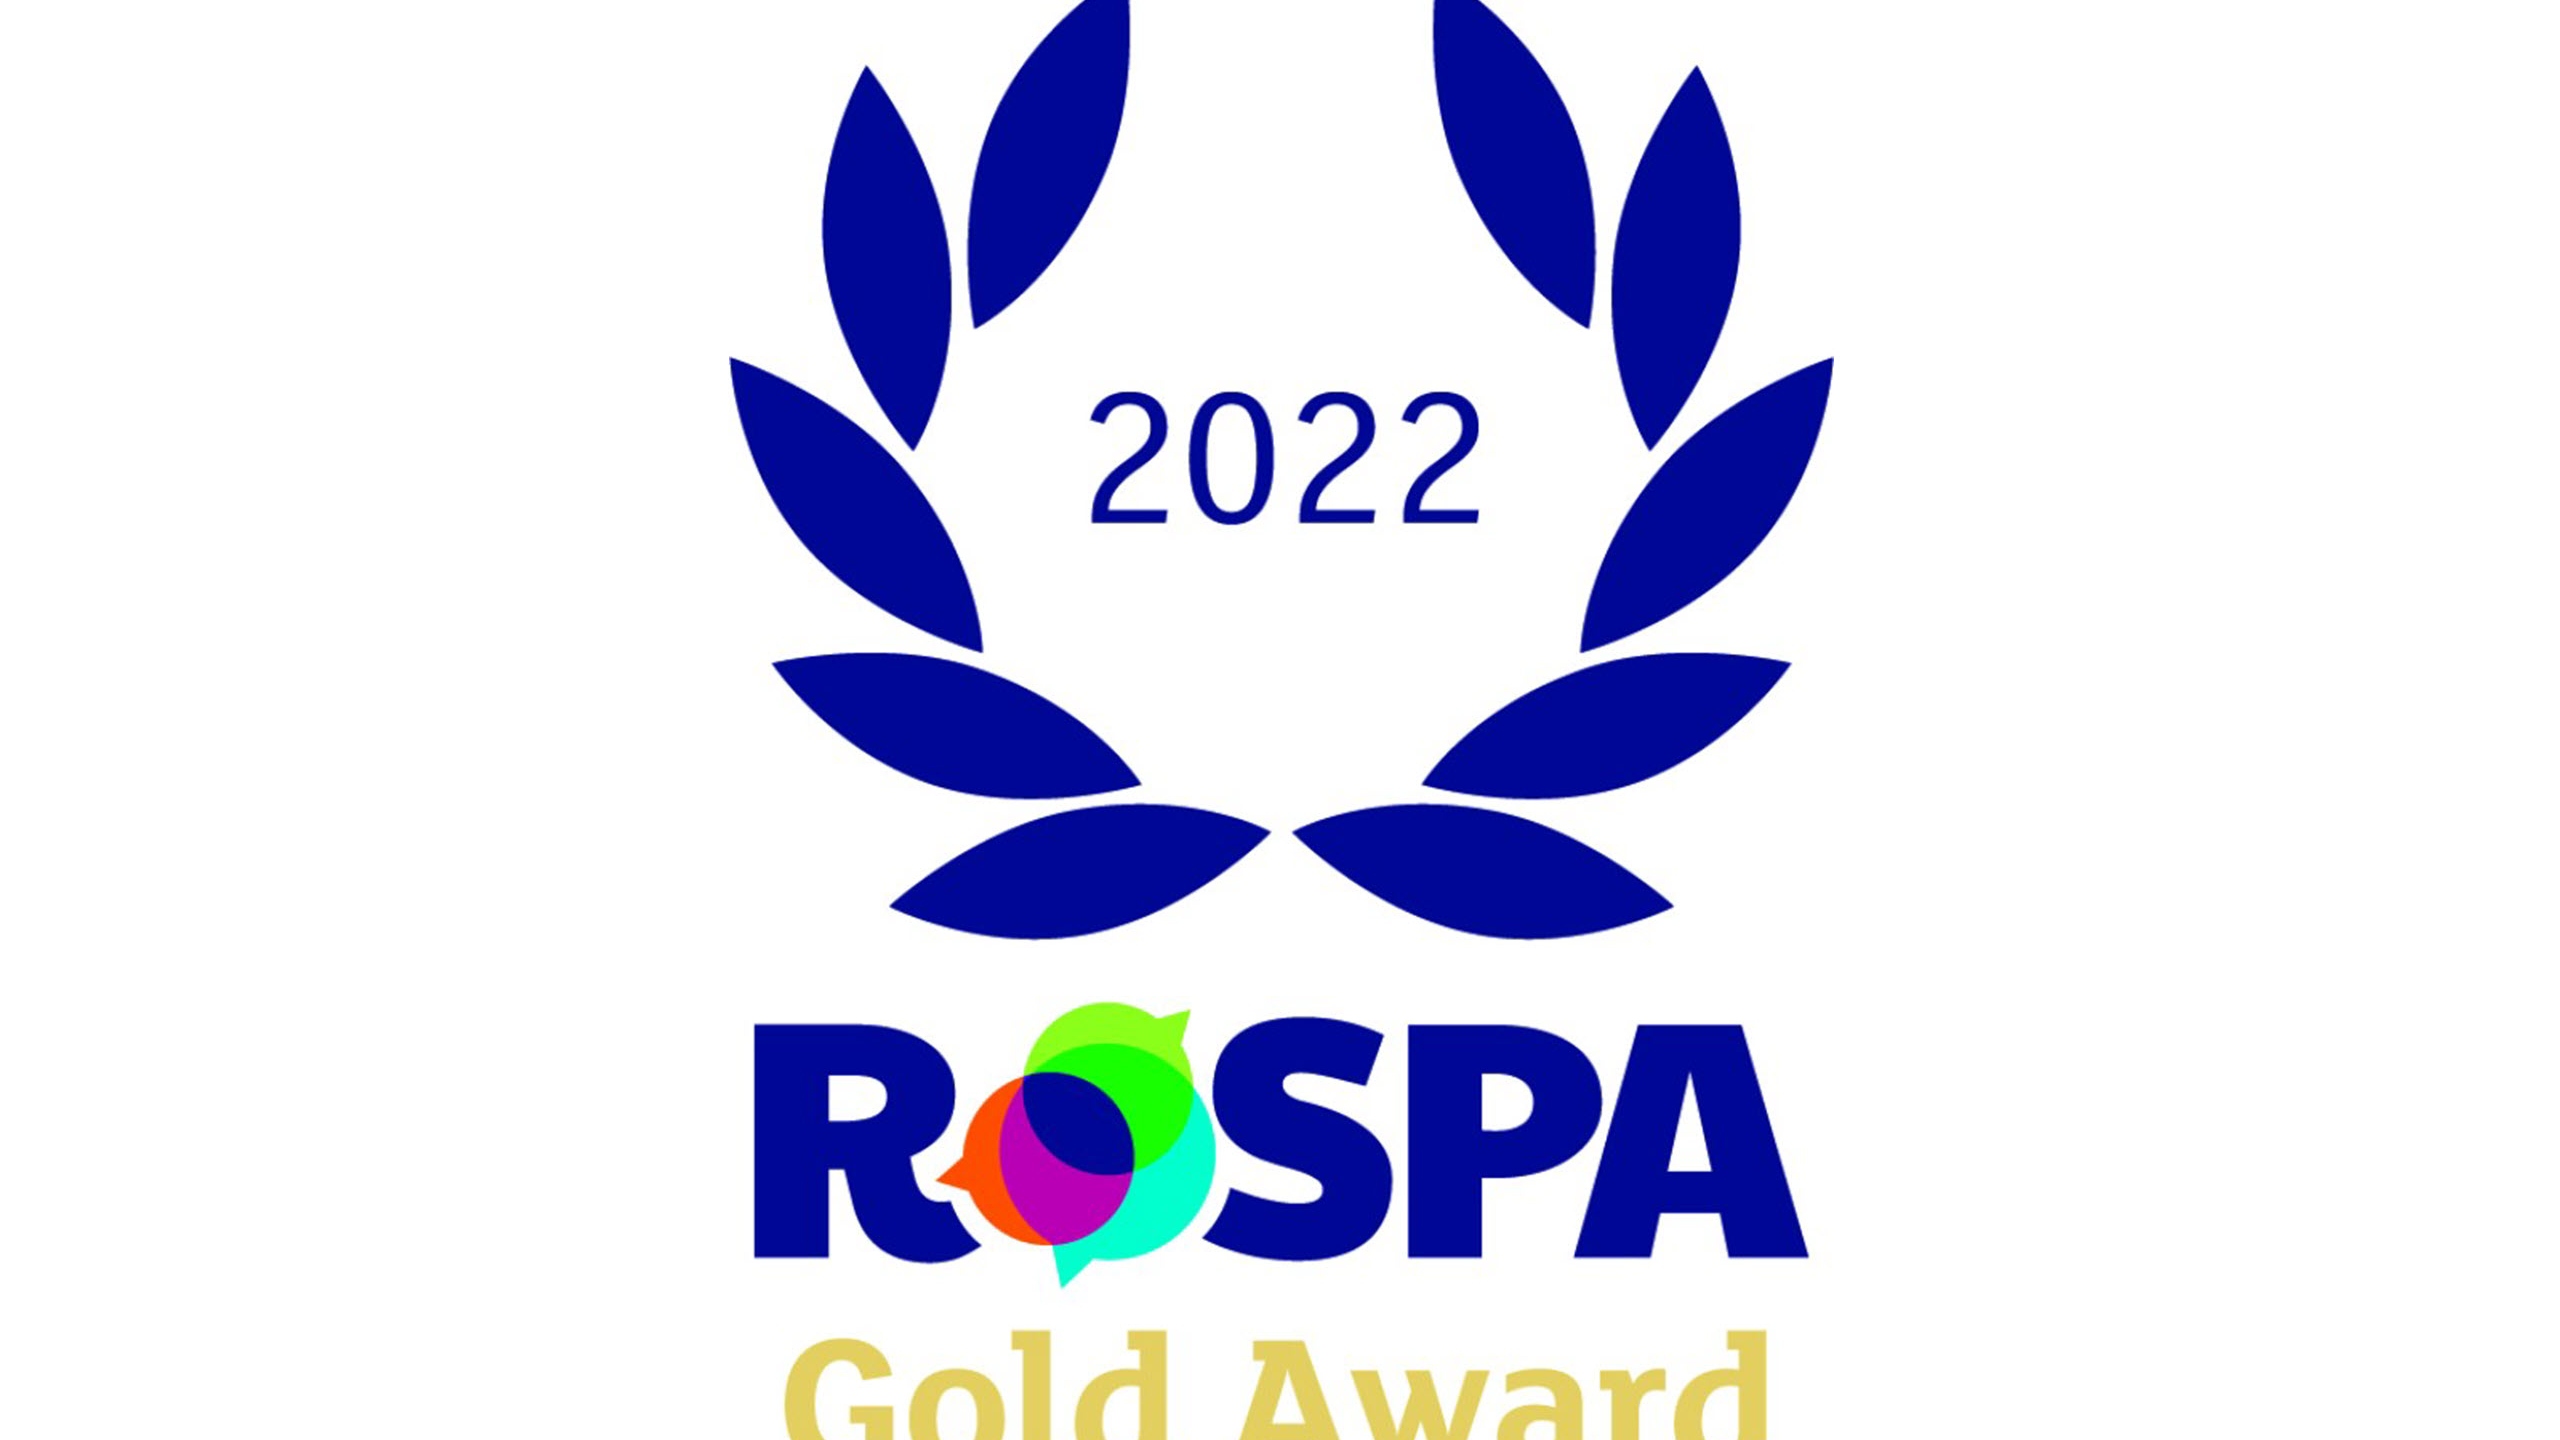 2022 RoSPA Gold Medal Award